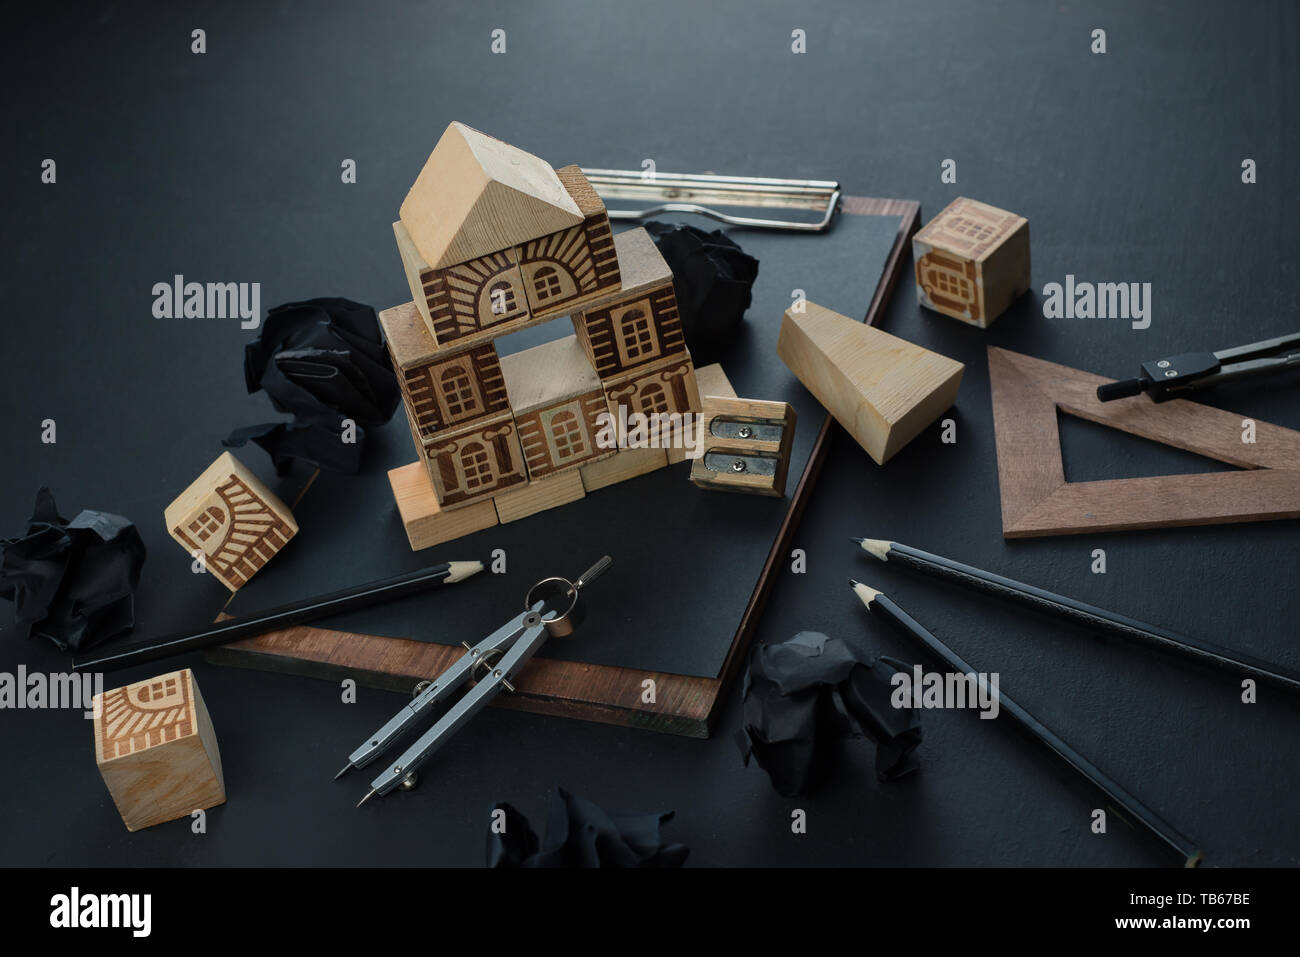 Bau ein Haus, Immobilien Planung und Studium der Architektur Konzept. Dark Header mit Spielzeug Holzklötze, kleines Haus, Bleistifte und Kopieren. Stockfoto